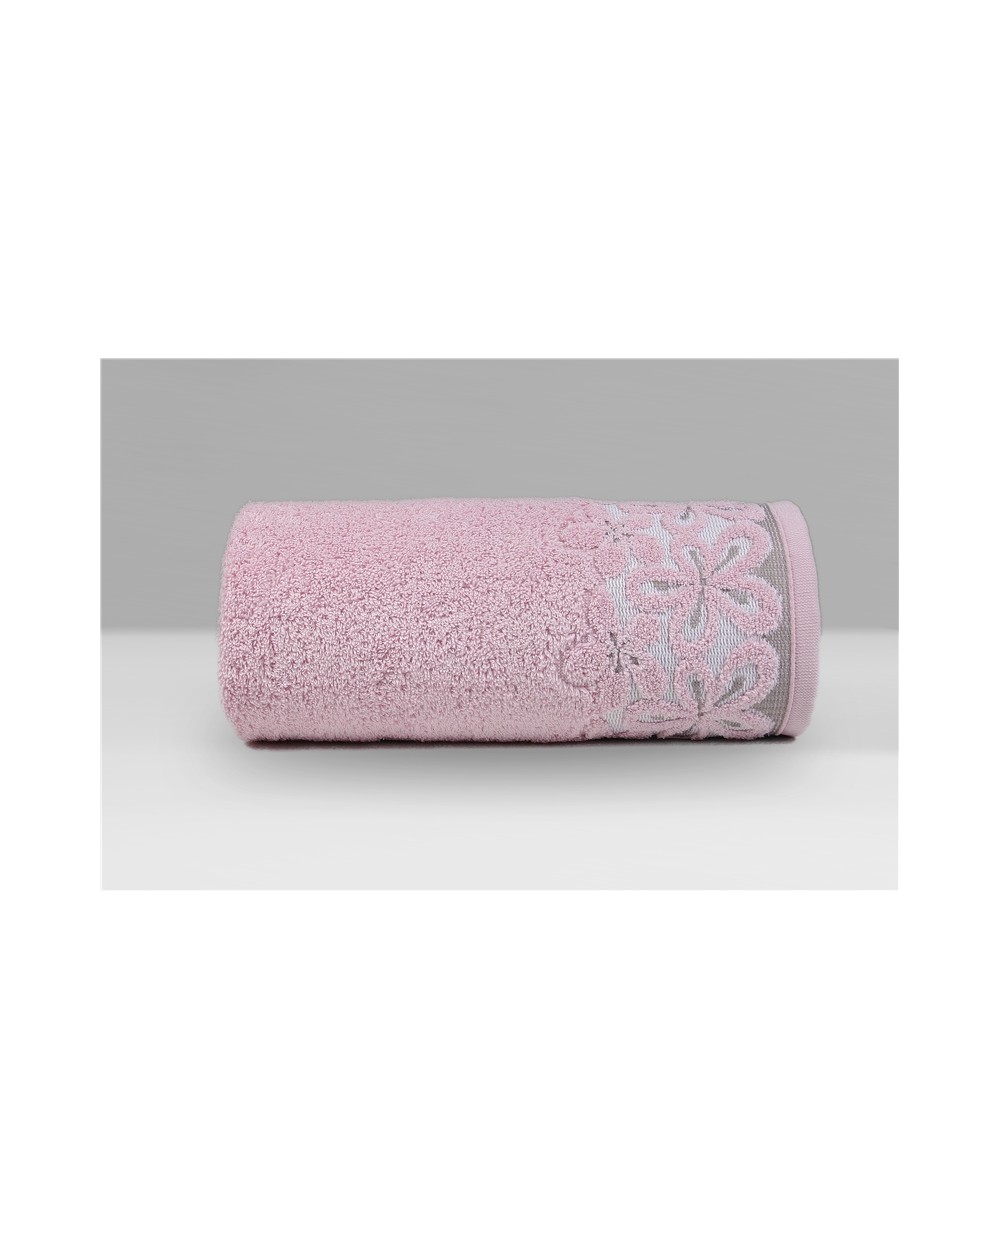 Ręcznik Bella mikrobawełna 70x140 różany